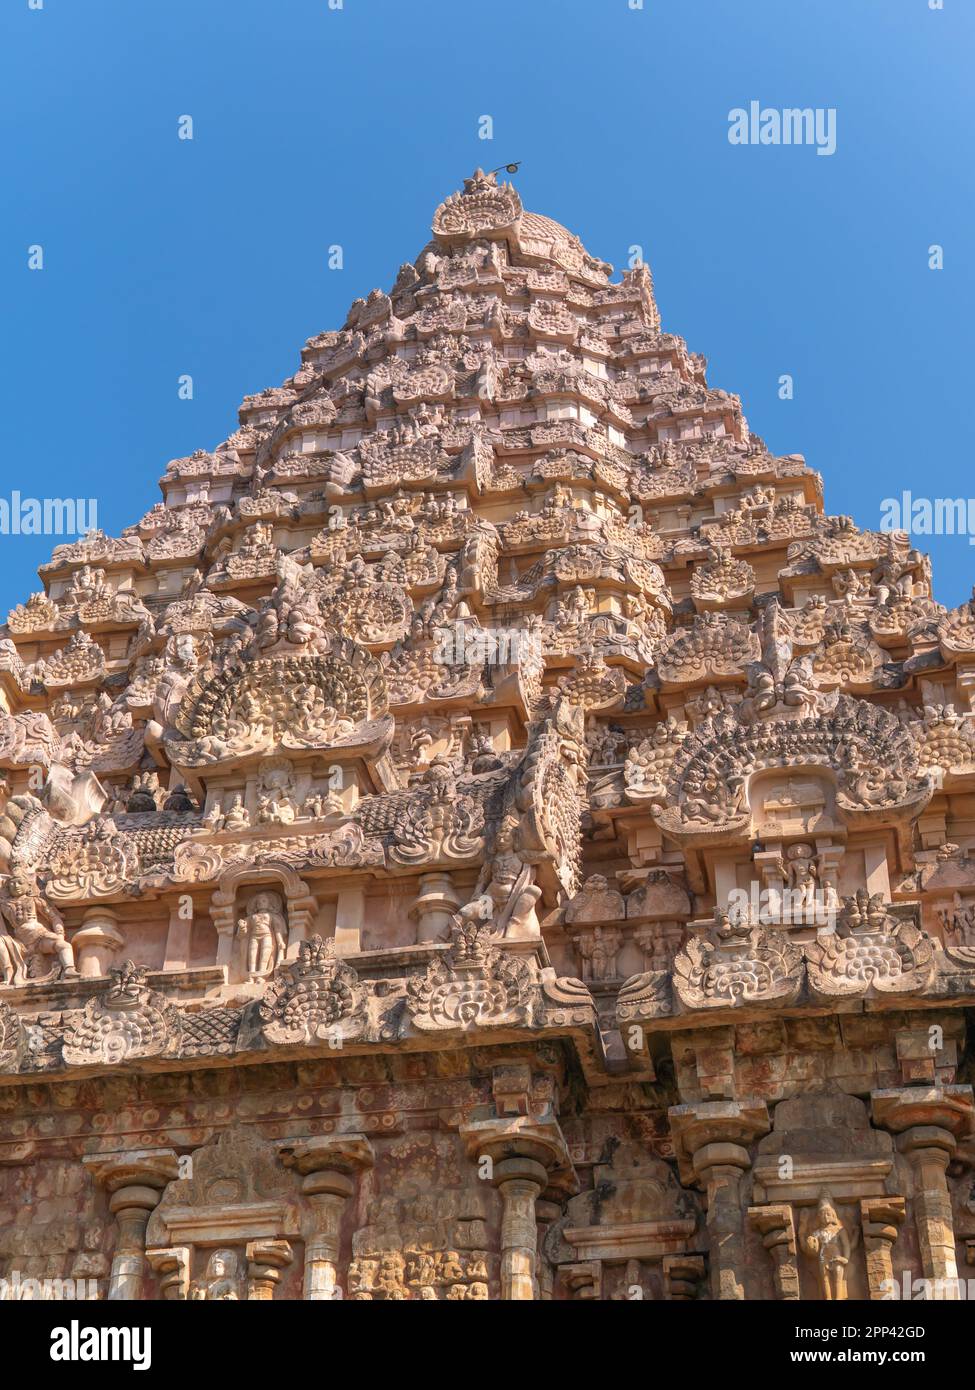 In una splendida giornata, il vimanam del tempio Gangaikonda Cholapuram, che contiene l'siva lingam, può essere visto sullo sfondo del cielo. Foto Stock